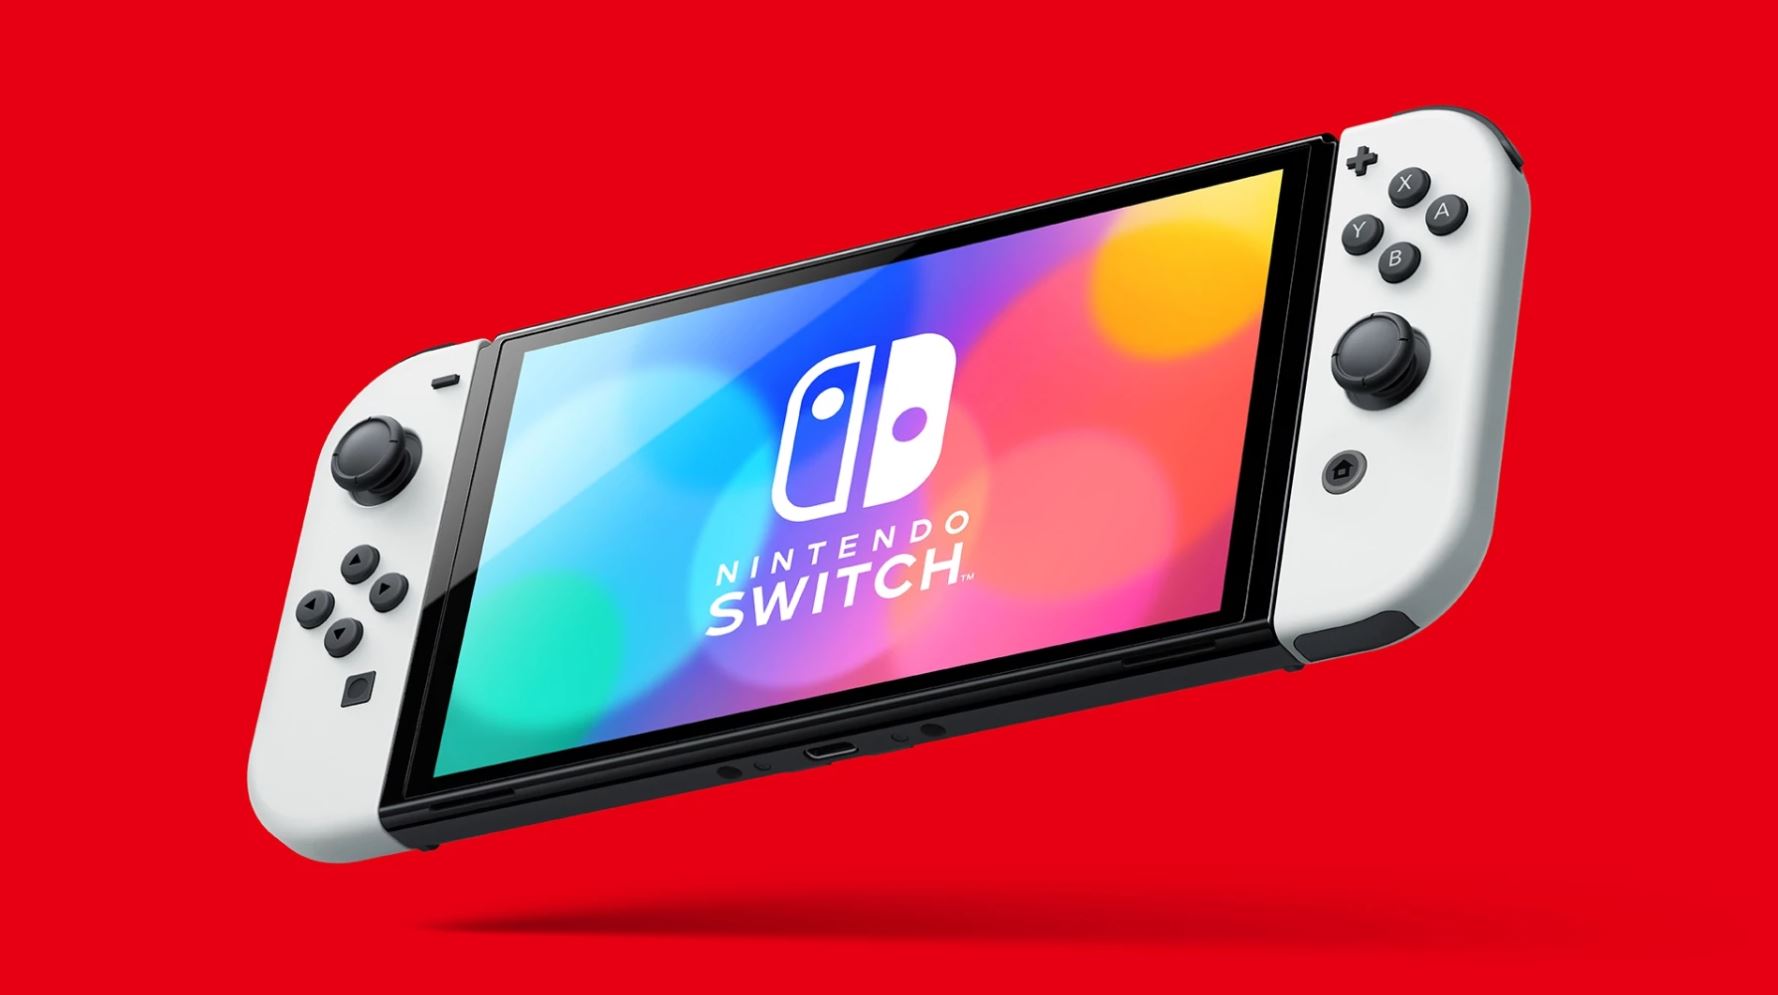 Nintendo desmiente planes de lanzar Switch Pro después del modelo OLED